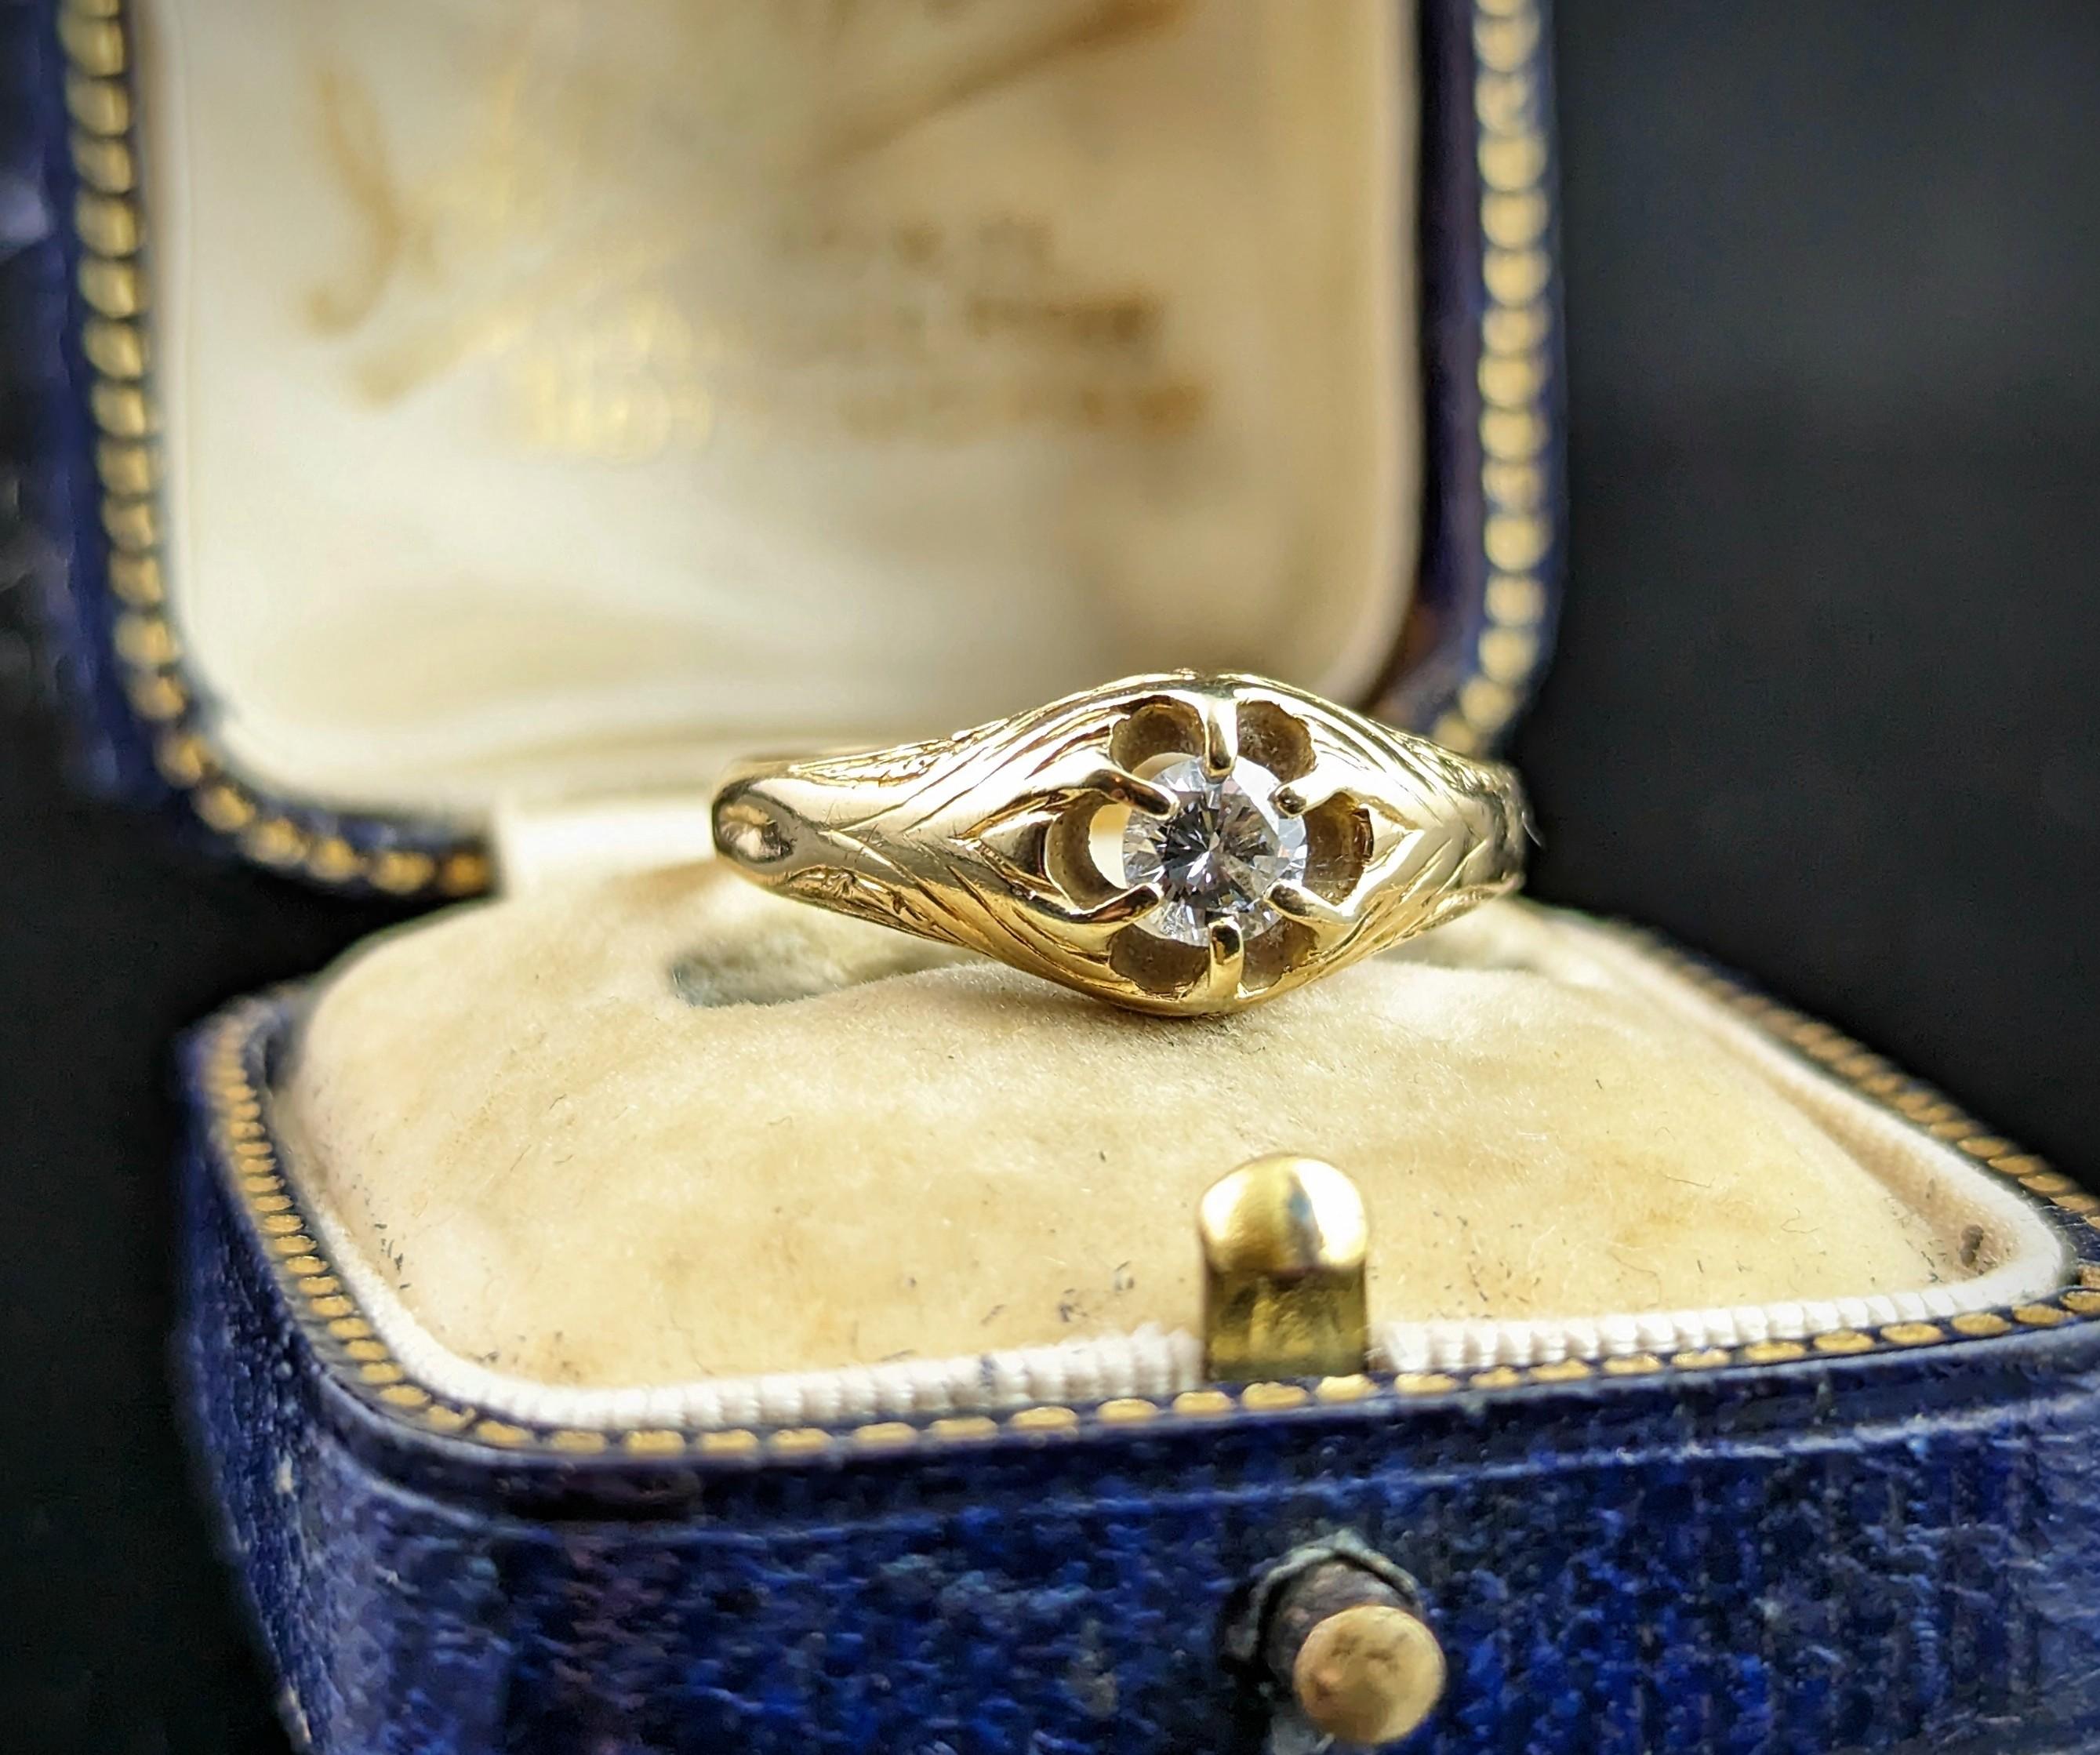 Dieser schöne antike Solitärring aus 18 Karat Gold glänzt wirklich.

Ein hübsches Stück, eingefasst in reichhaltiges 18-karätiges Gelbgold mit kunstvoll gravierten, klobigen Schultern. Auf der Vorderseite befindet sich ein funkelnder weißer Diamant